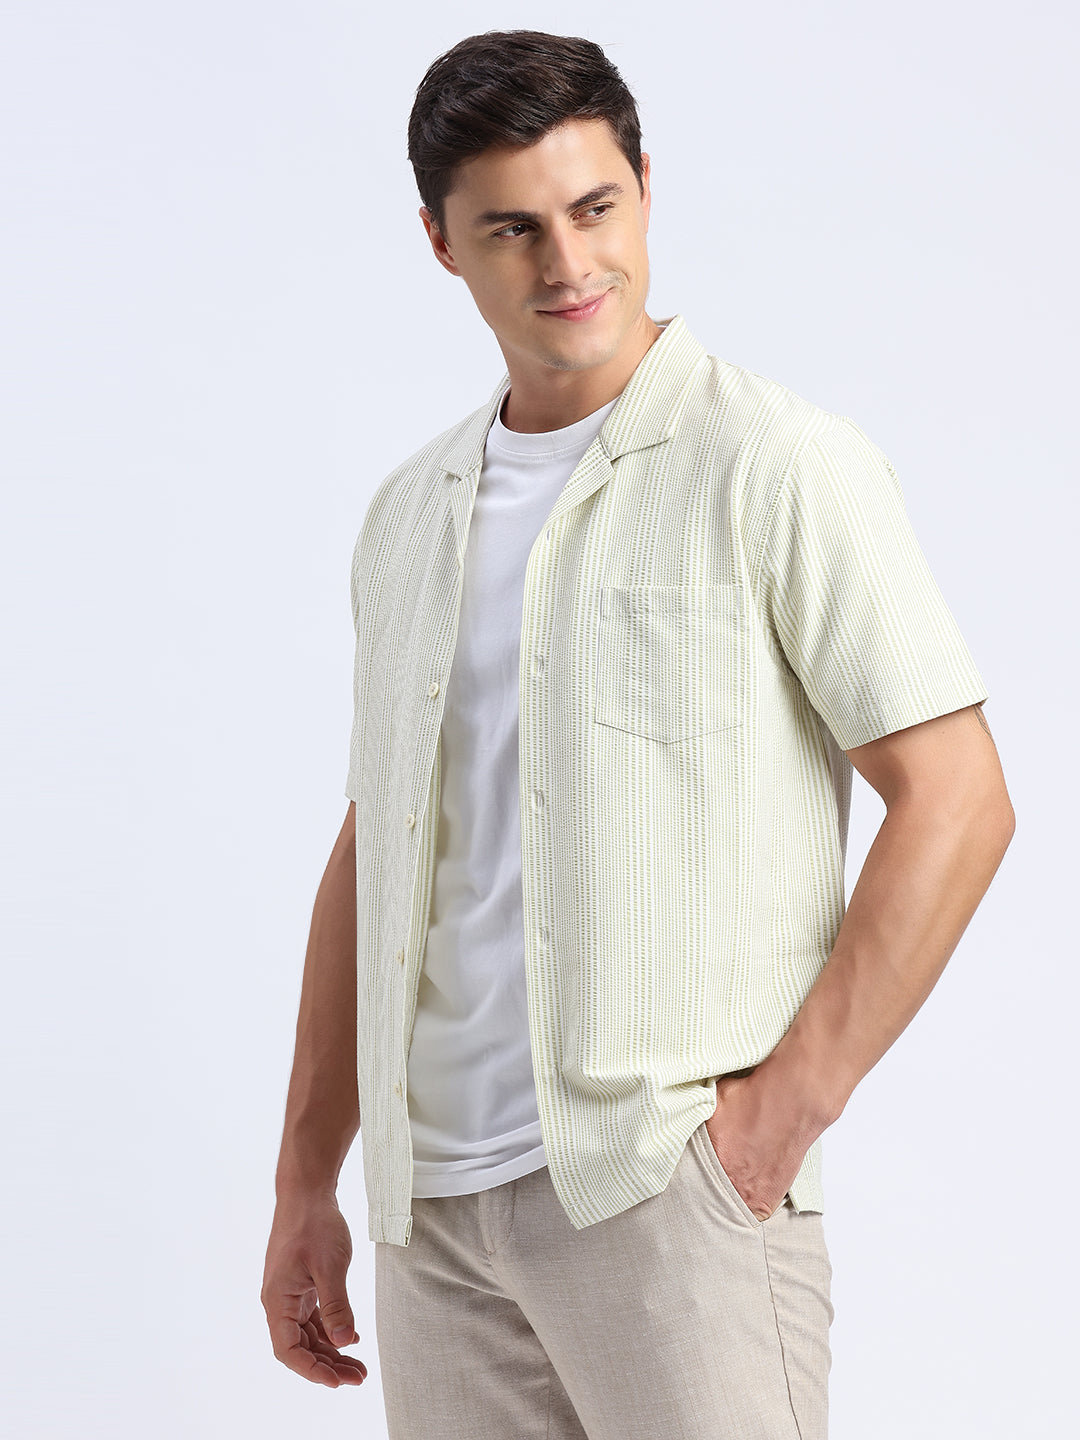 Tarragon Green summer linen shirts for men